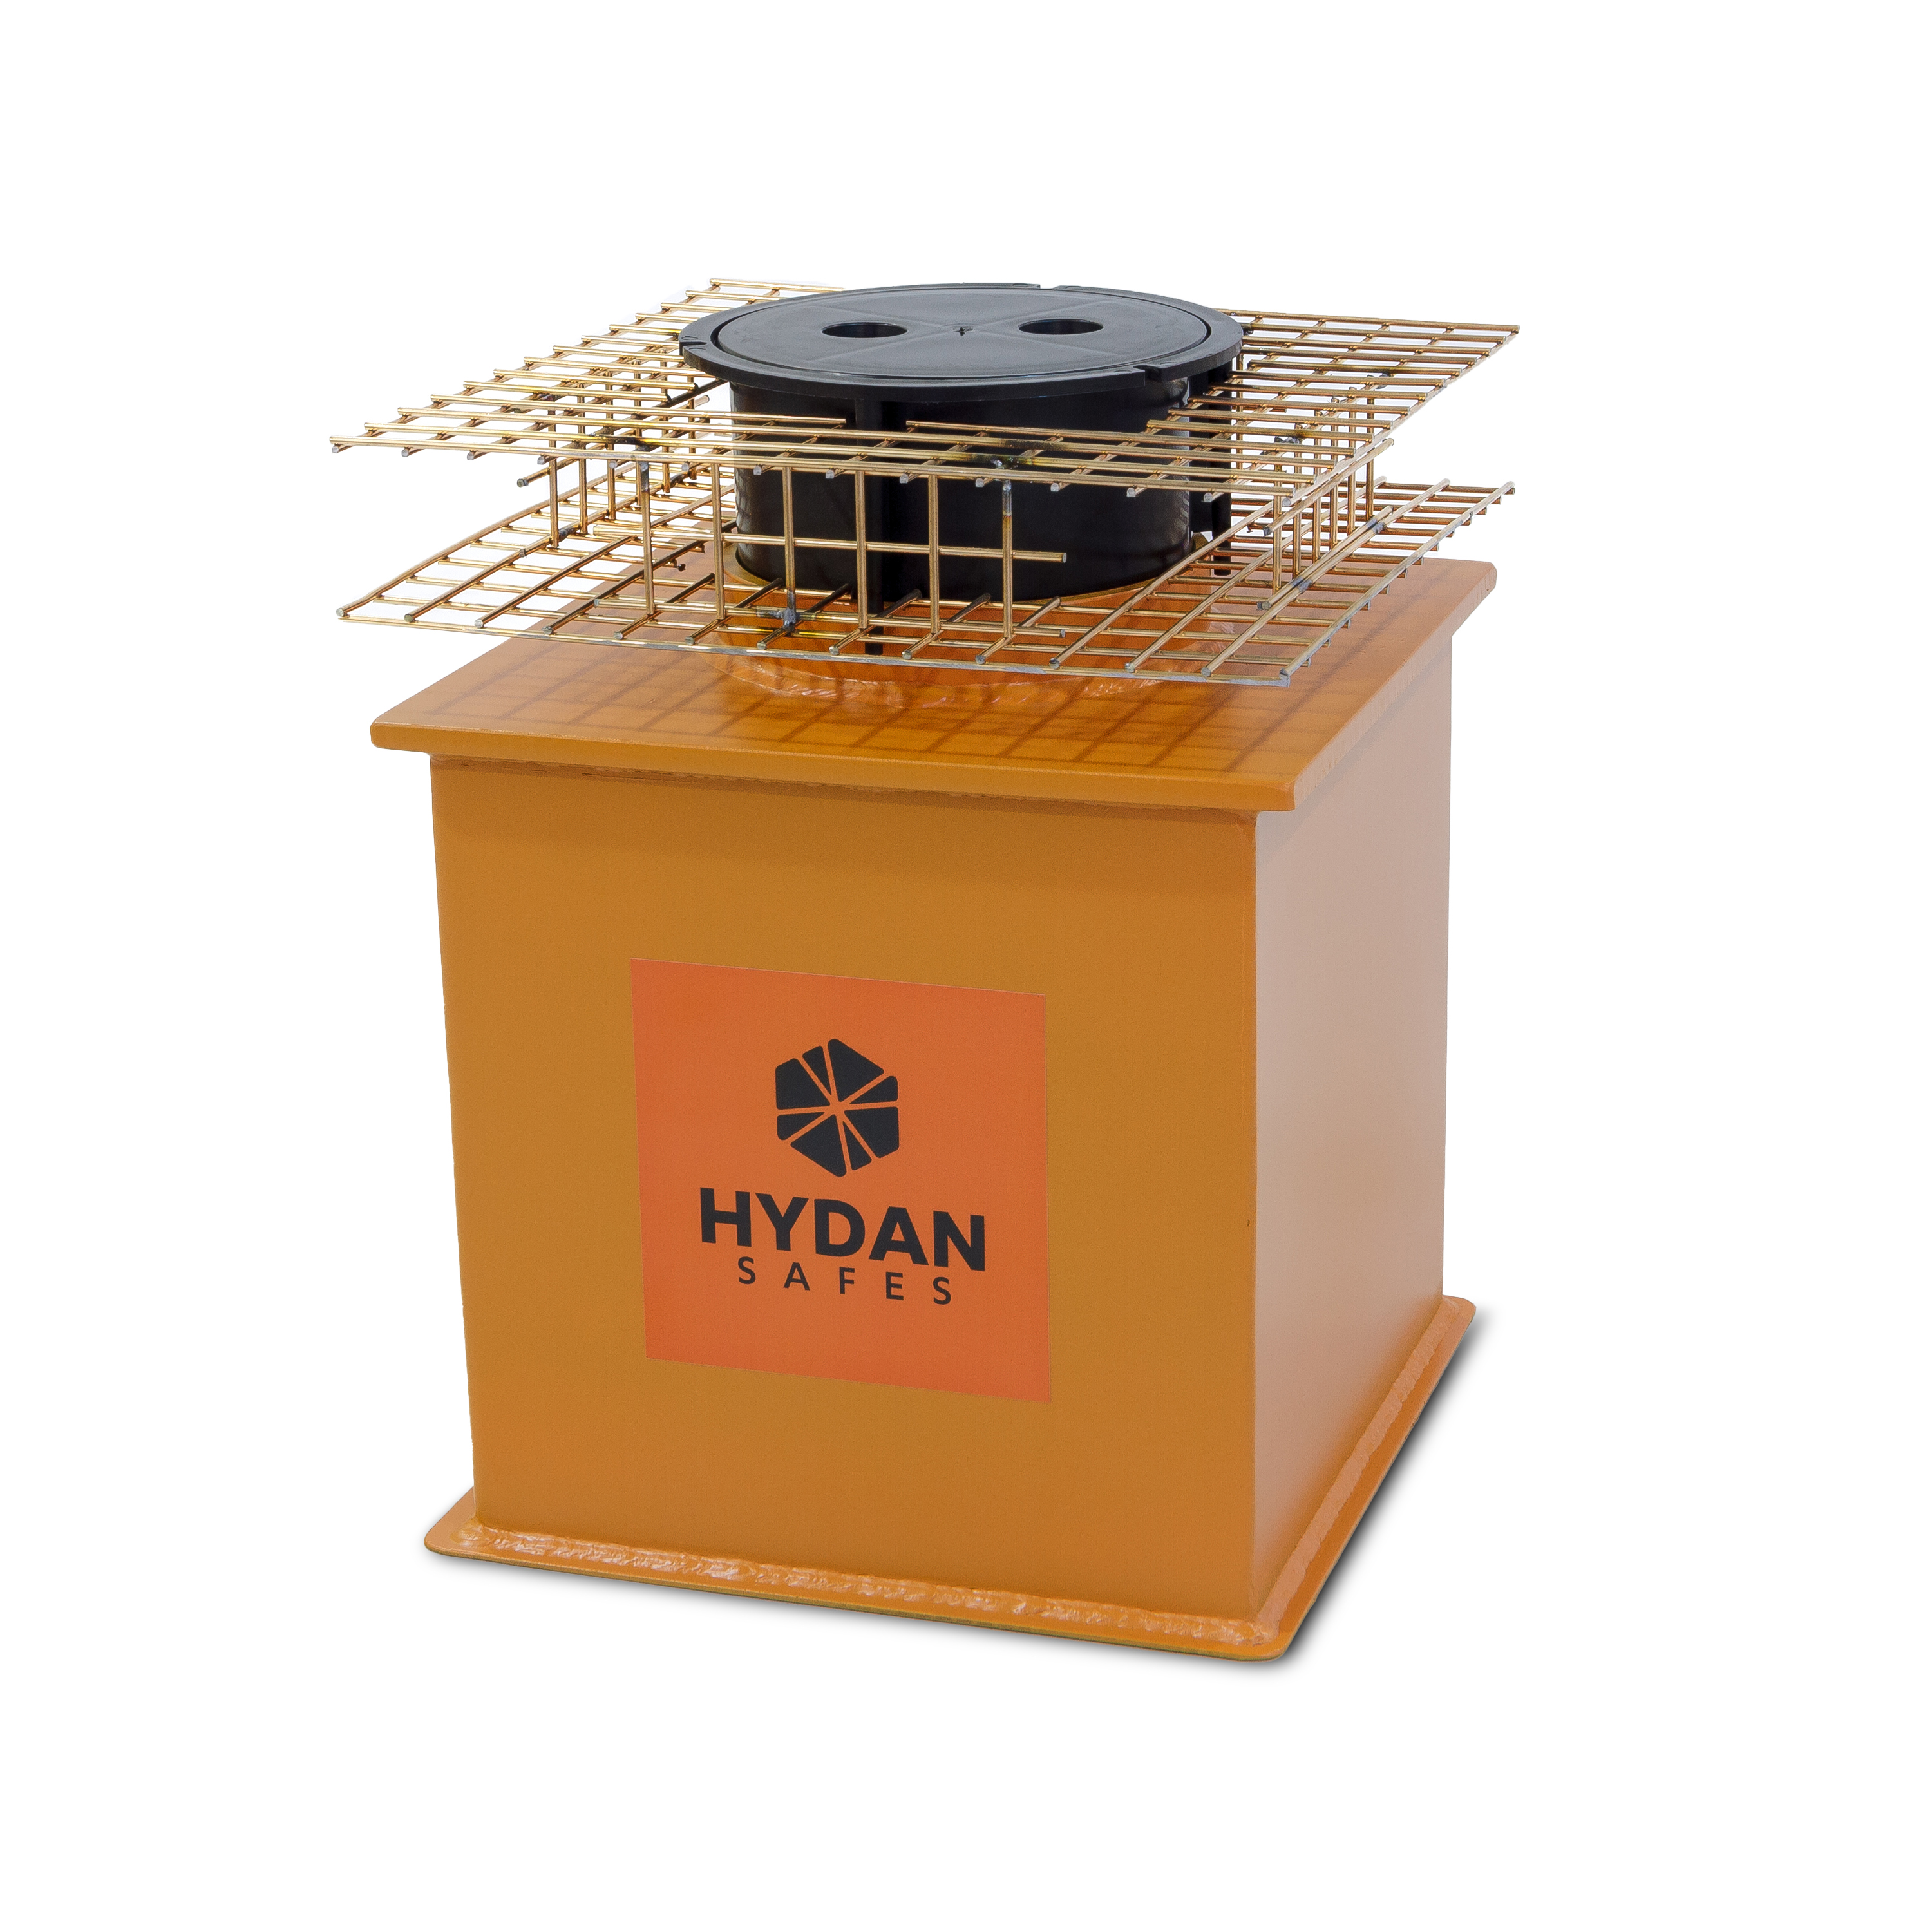 Hydan Standard Underfloor Safe